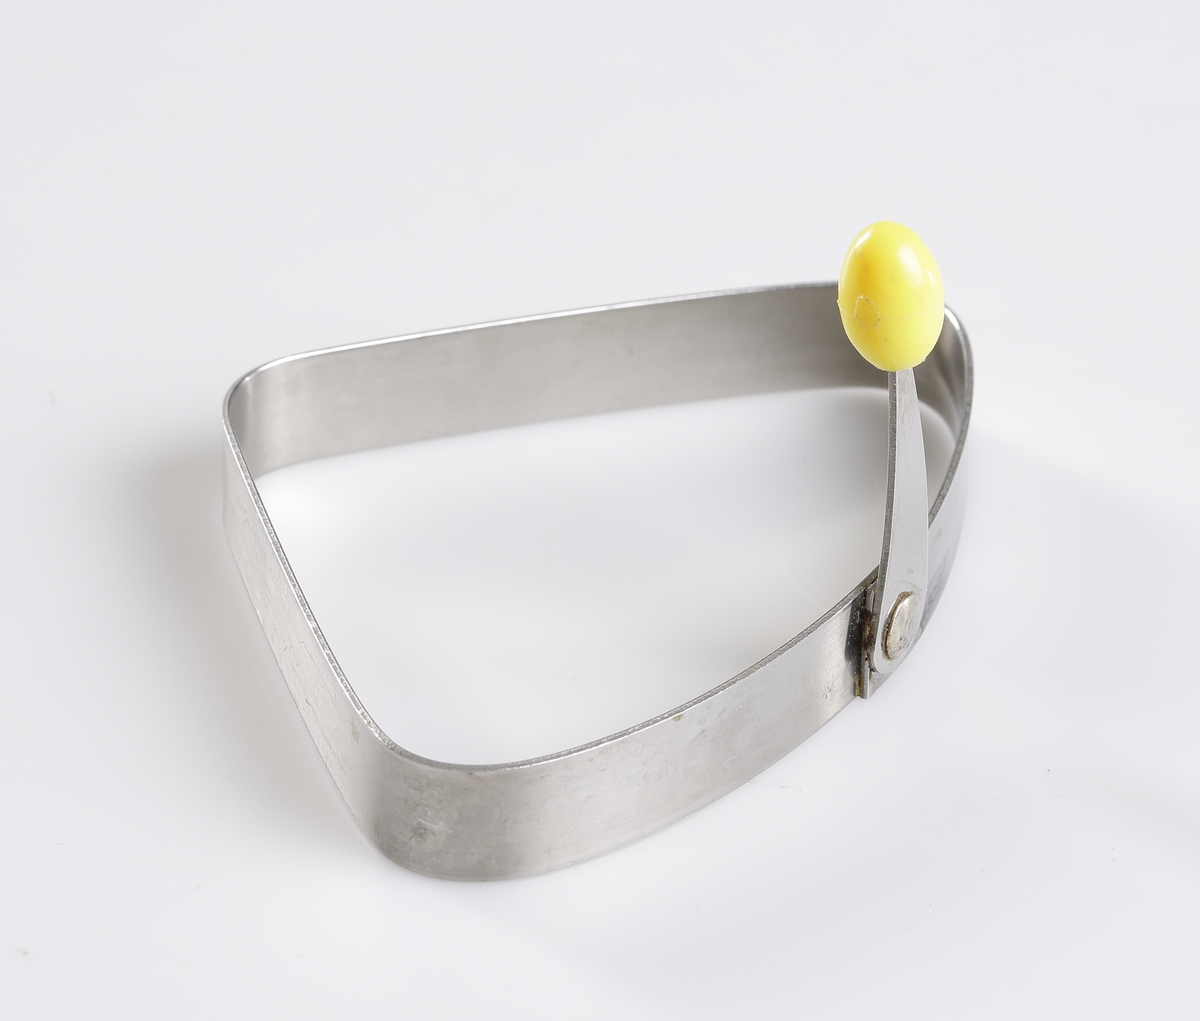 Äggringen "Colomba" i rostfritt stål av märket Nilsjohan. Lyfthandtag i gul plast. Handtaget kan vikas ner längs formens sida.
